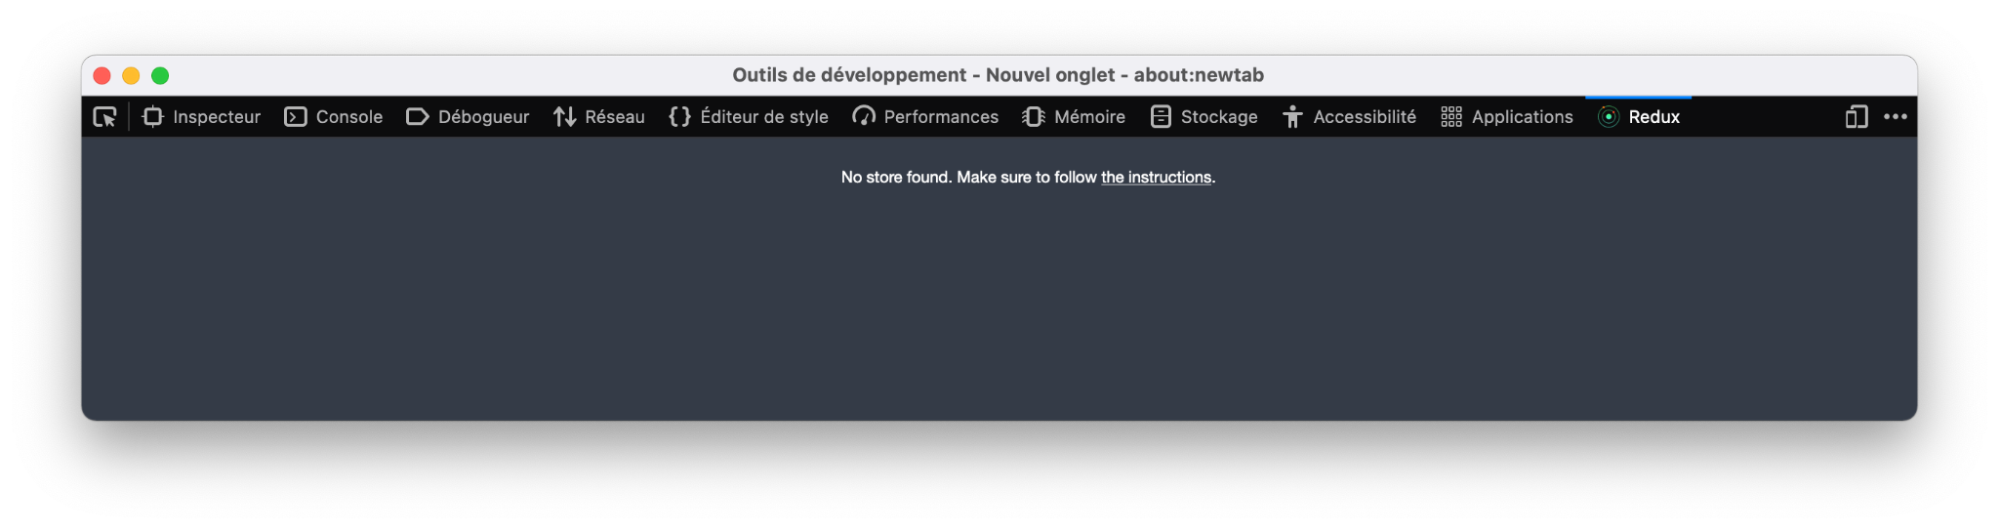 Extension Redux DevTools pour Firefox qui affiche un message pour indiquer qu’aucun store n’a été trouvé.